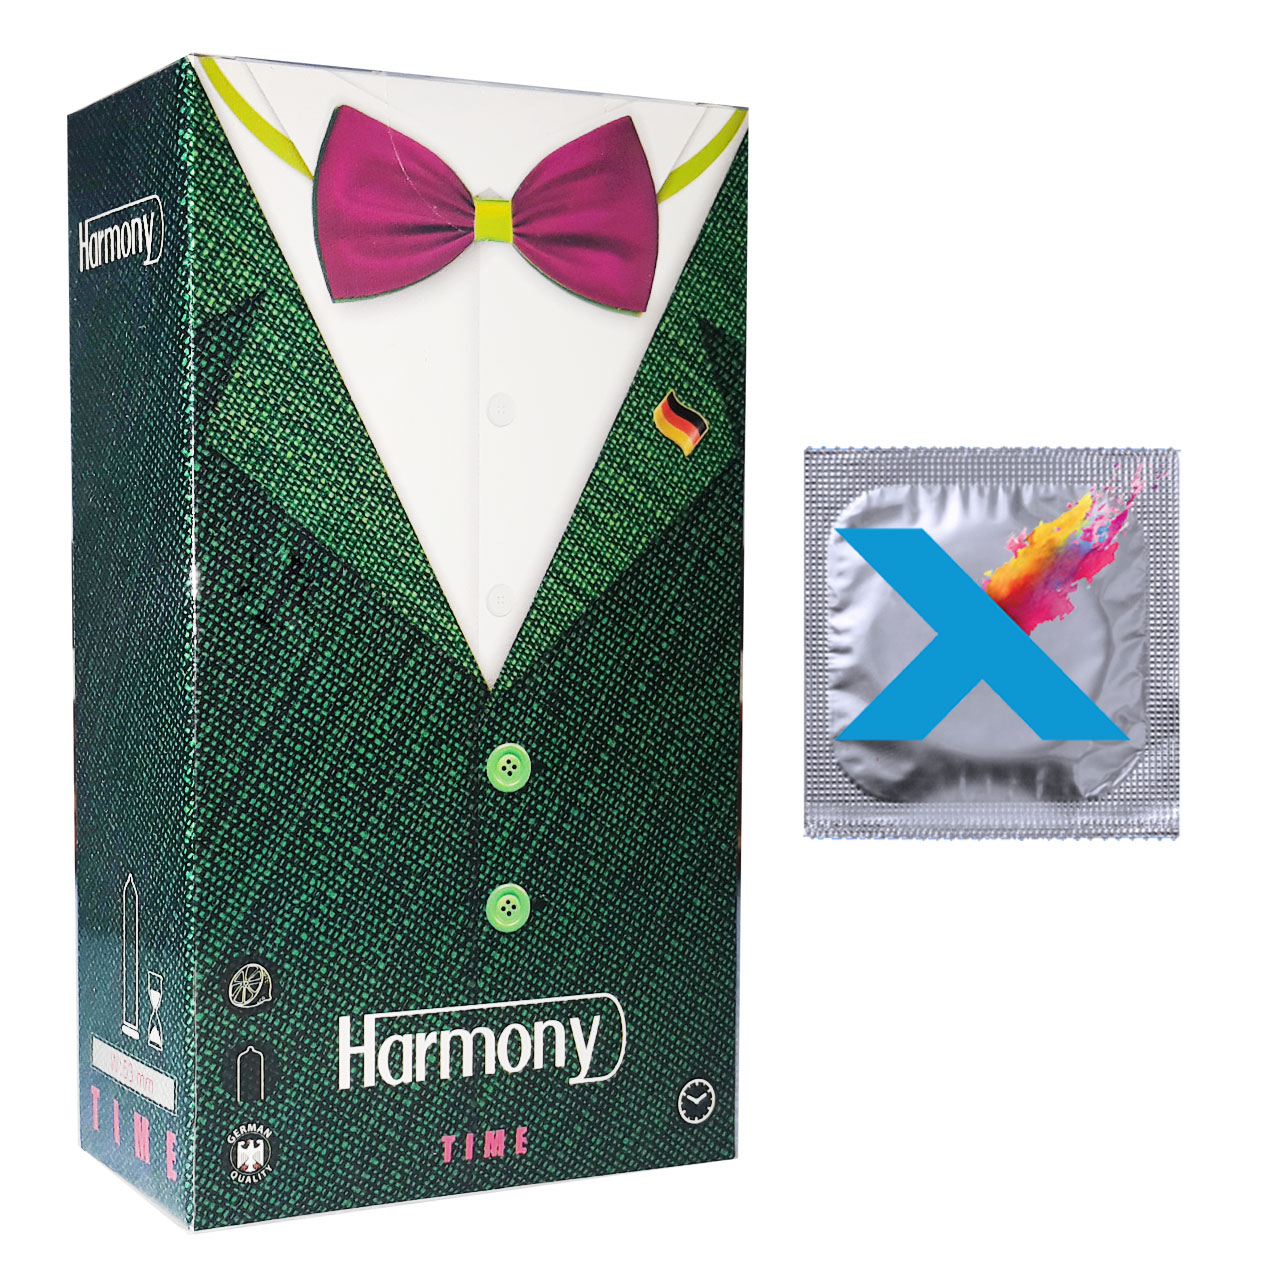 کاندوم هارمونی مدل TIME بسته 12 عددی به همراه کاندوم مدل X  بسته 1 عددی